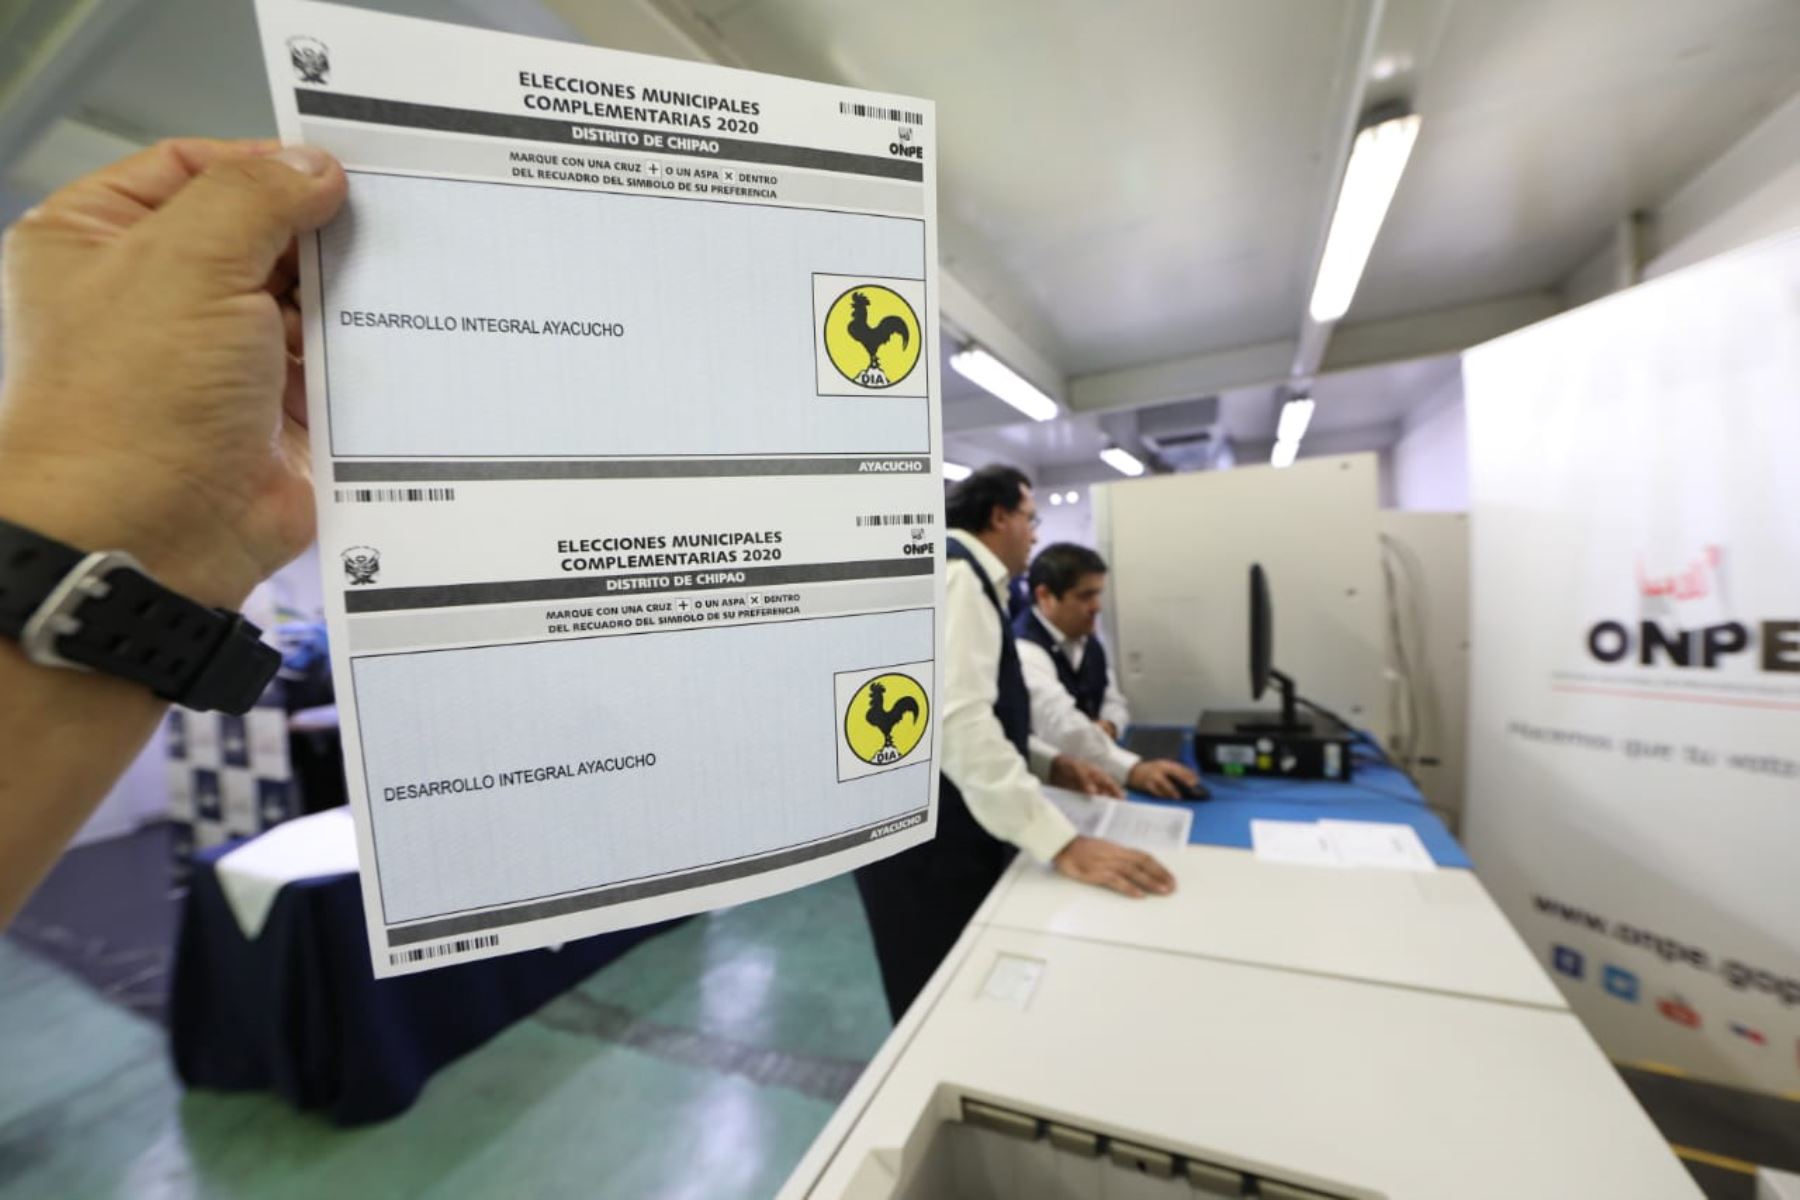 La ONPE imprimió 2,064 cédulas de sufragio para las elecciones municipales complementarias en el distrito de Chipao, región Ayacucho,